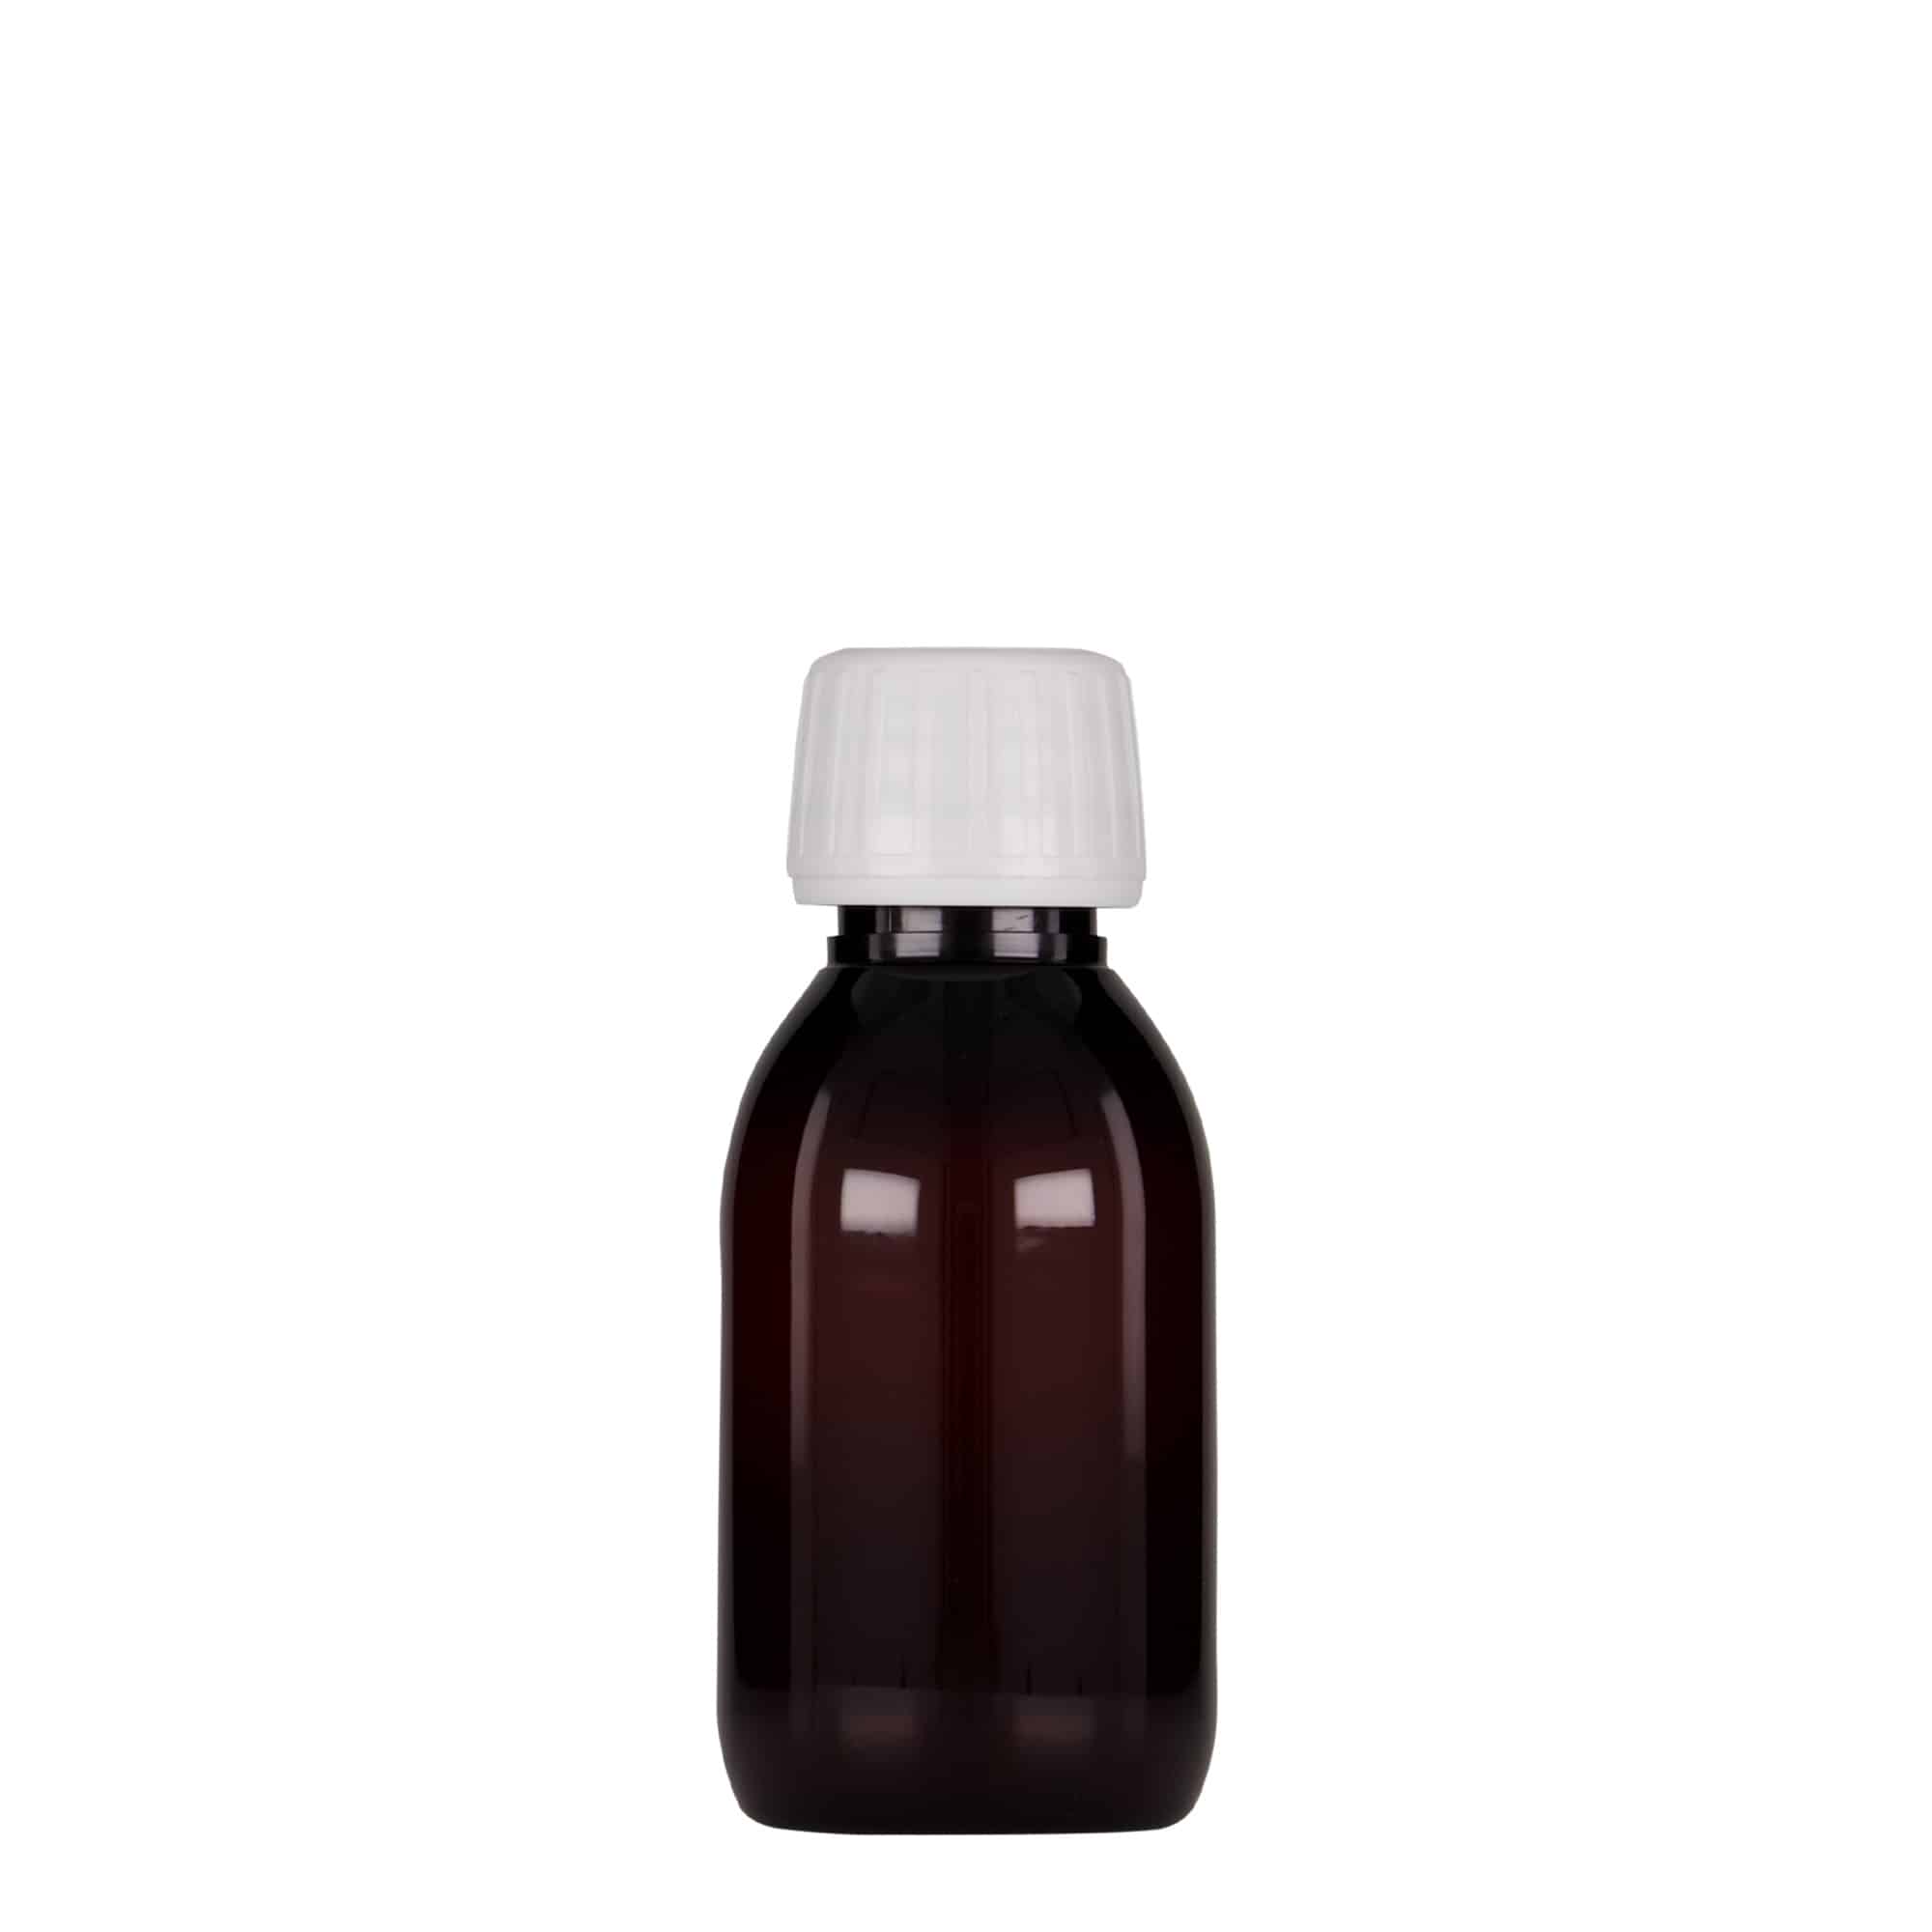 Flacon pharmaceutique en PET 100 ml, brun, plastique, bouchage: PP 28